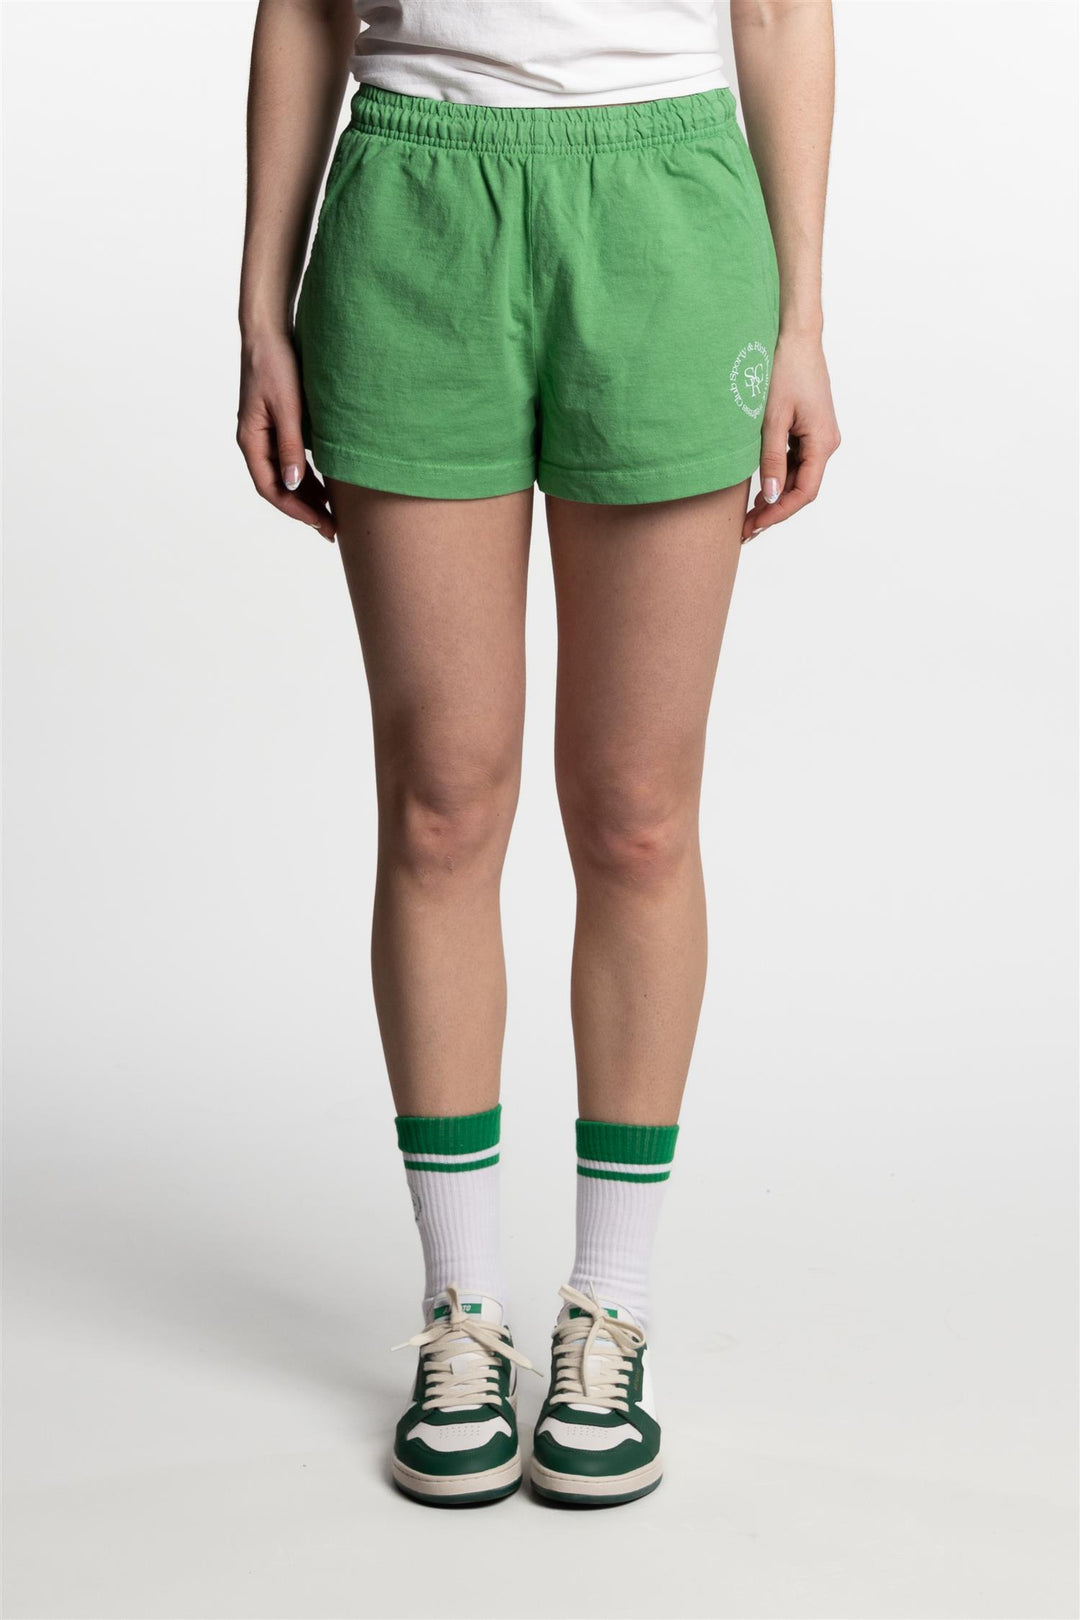 SRHWC Disco Shorts- Verde/White